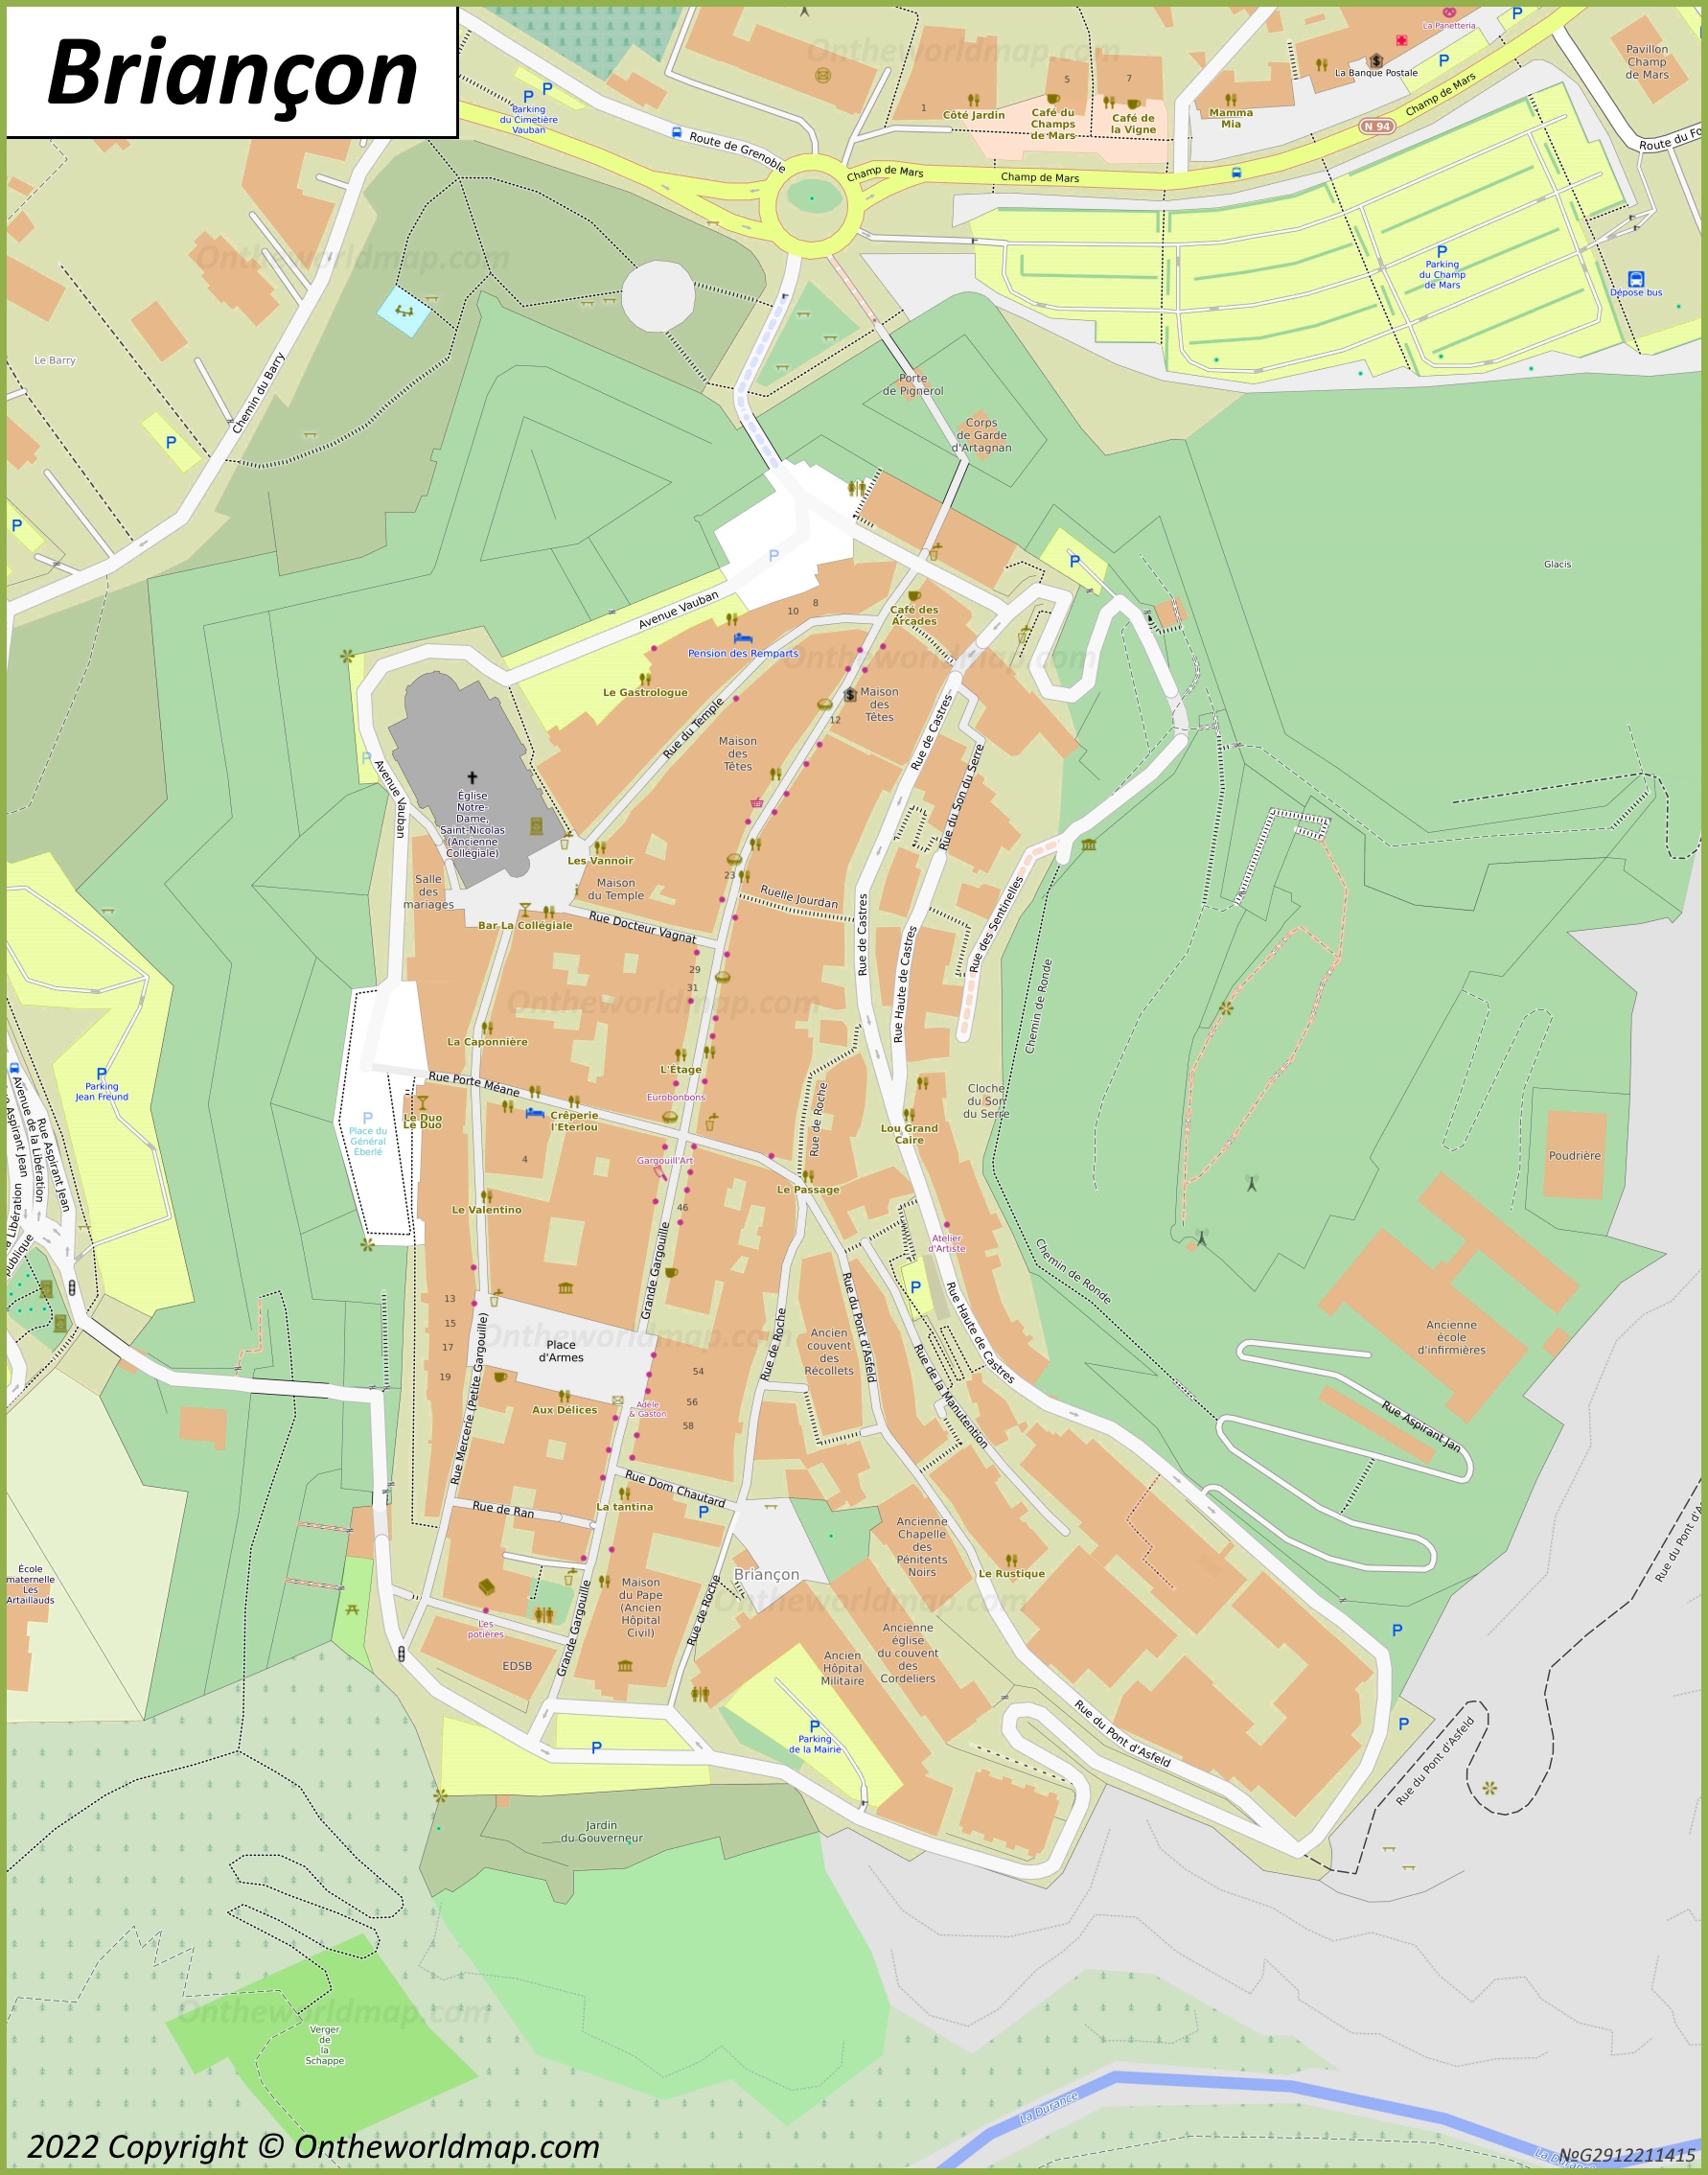 Map of Cité Vauban (Briançon)